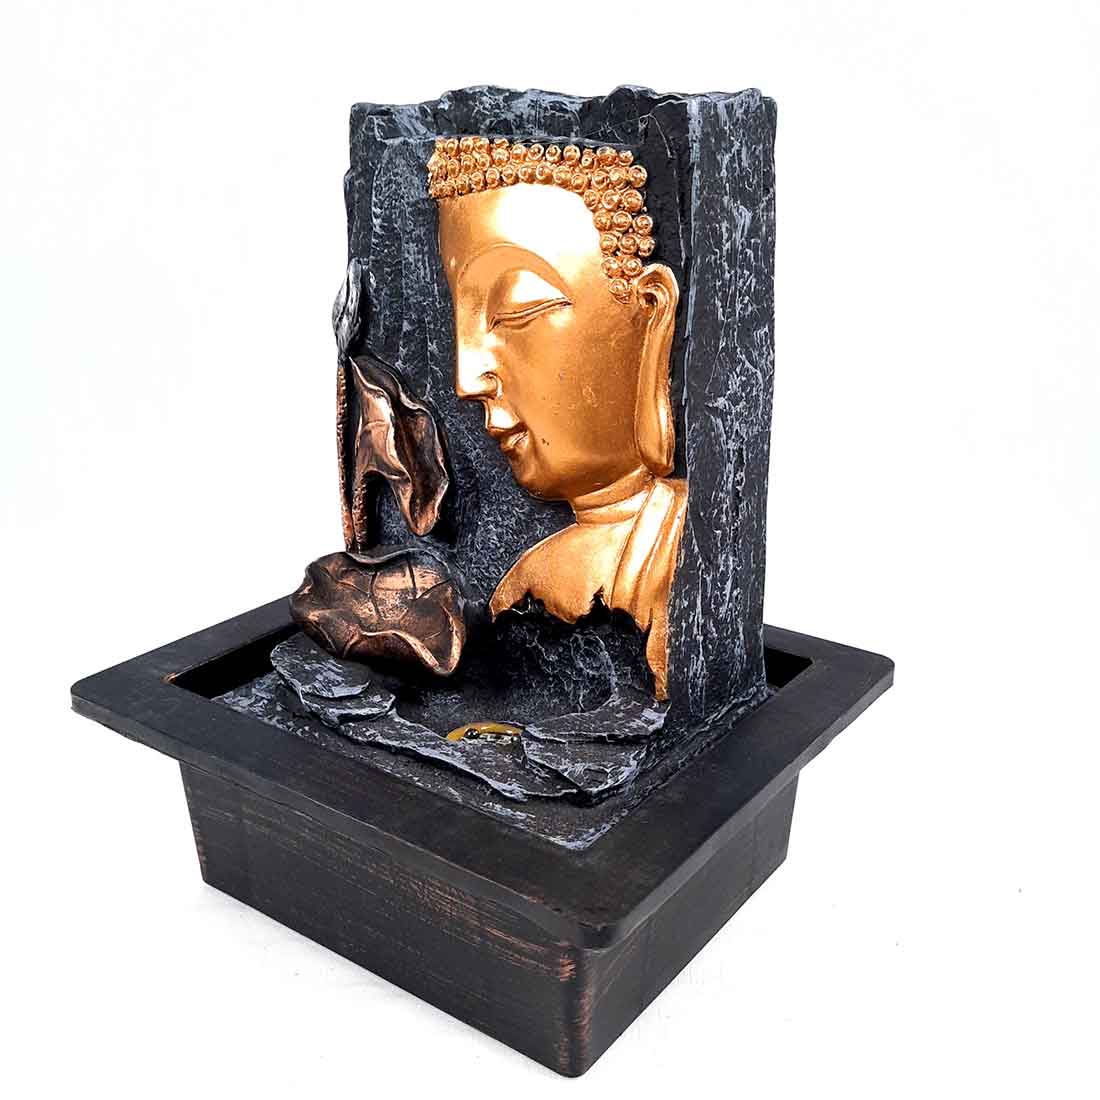 Buddha Water Fountain - Decorative Showpiece for Table & Office Decor - 10 Inch - ApkaMart